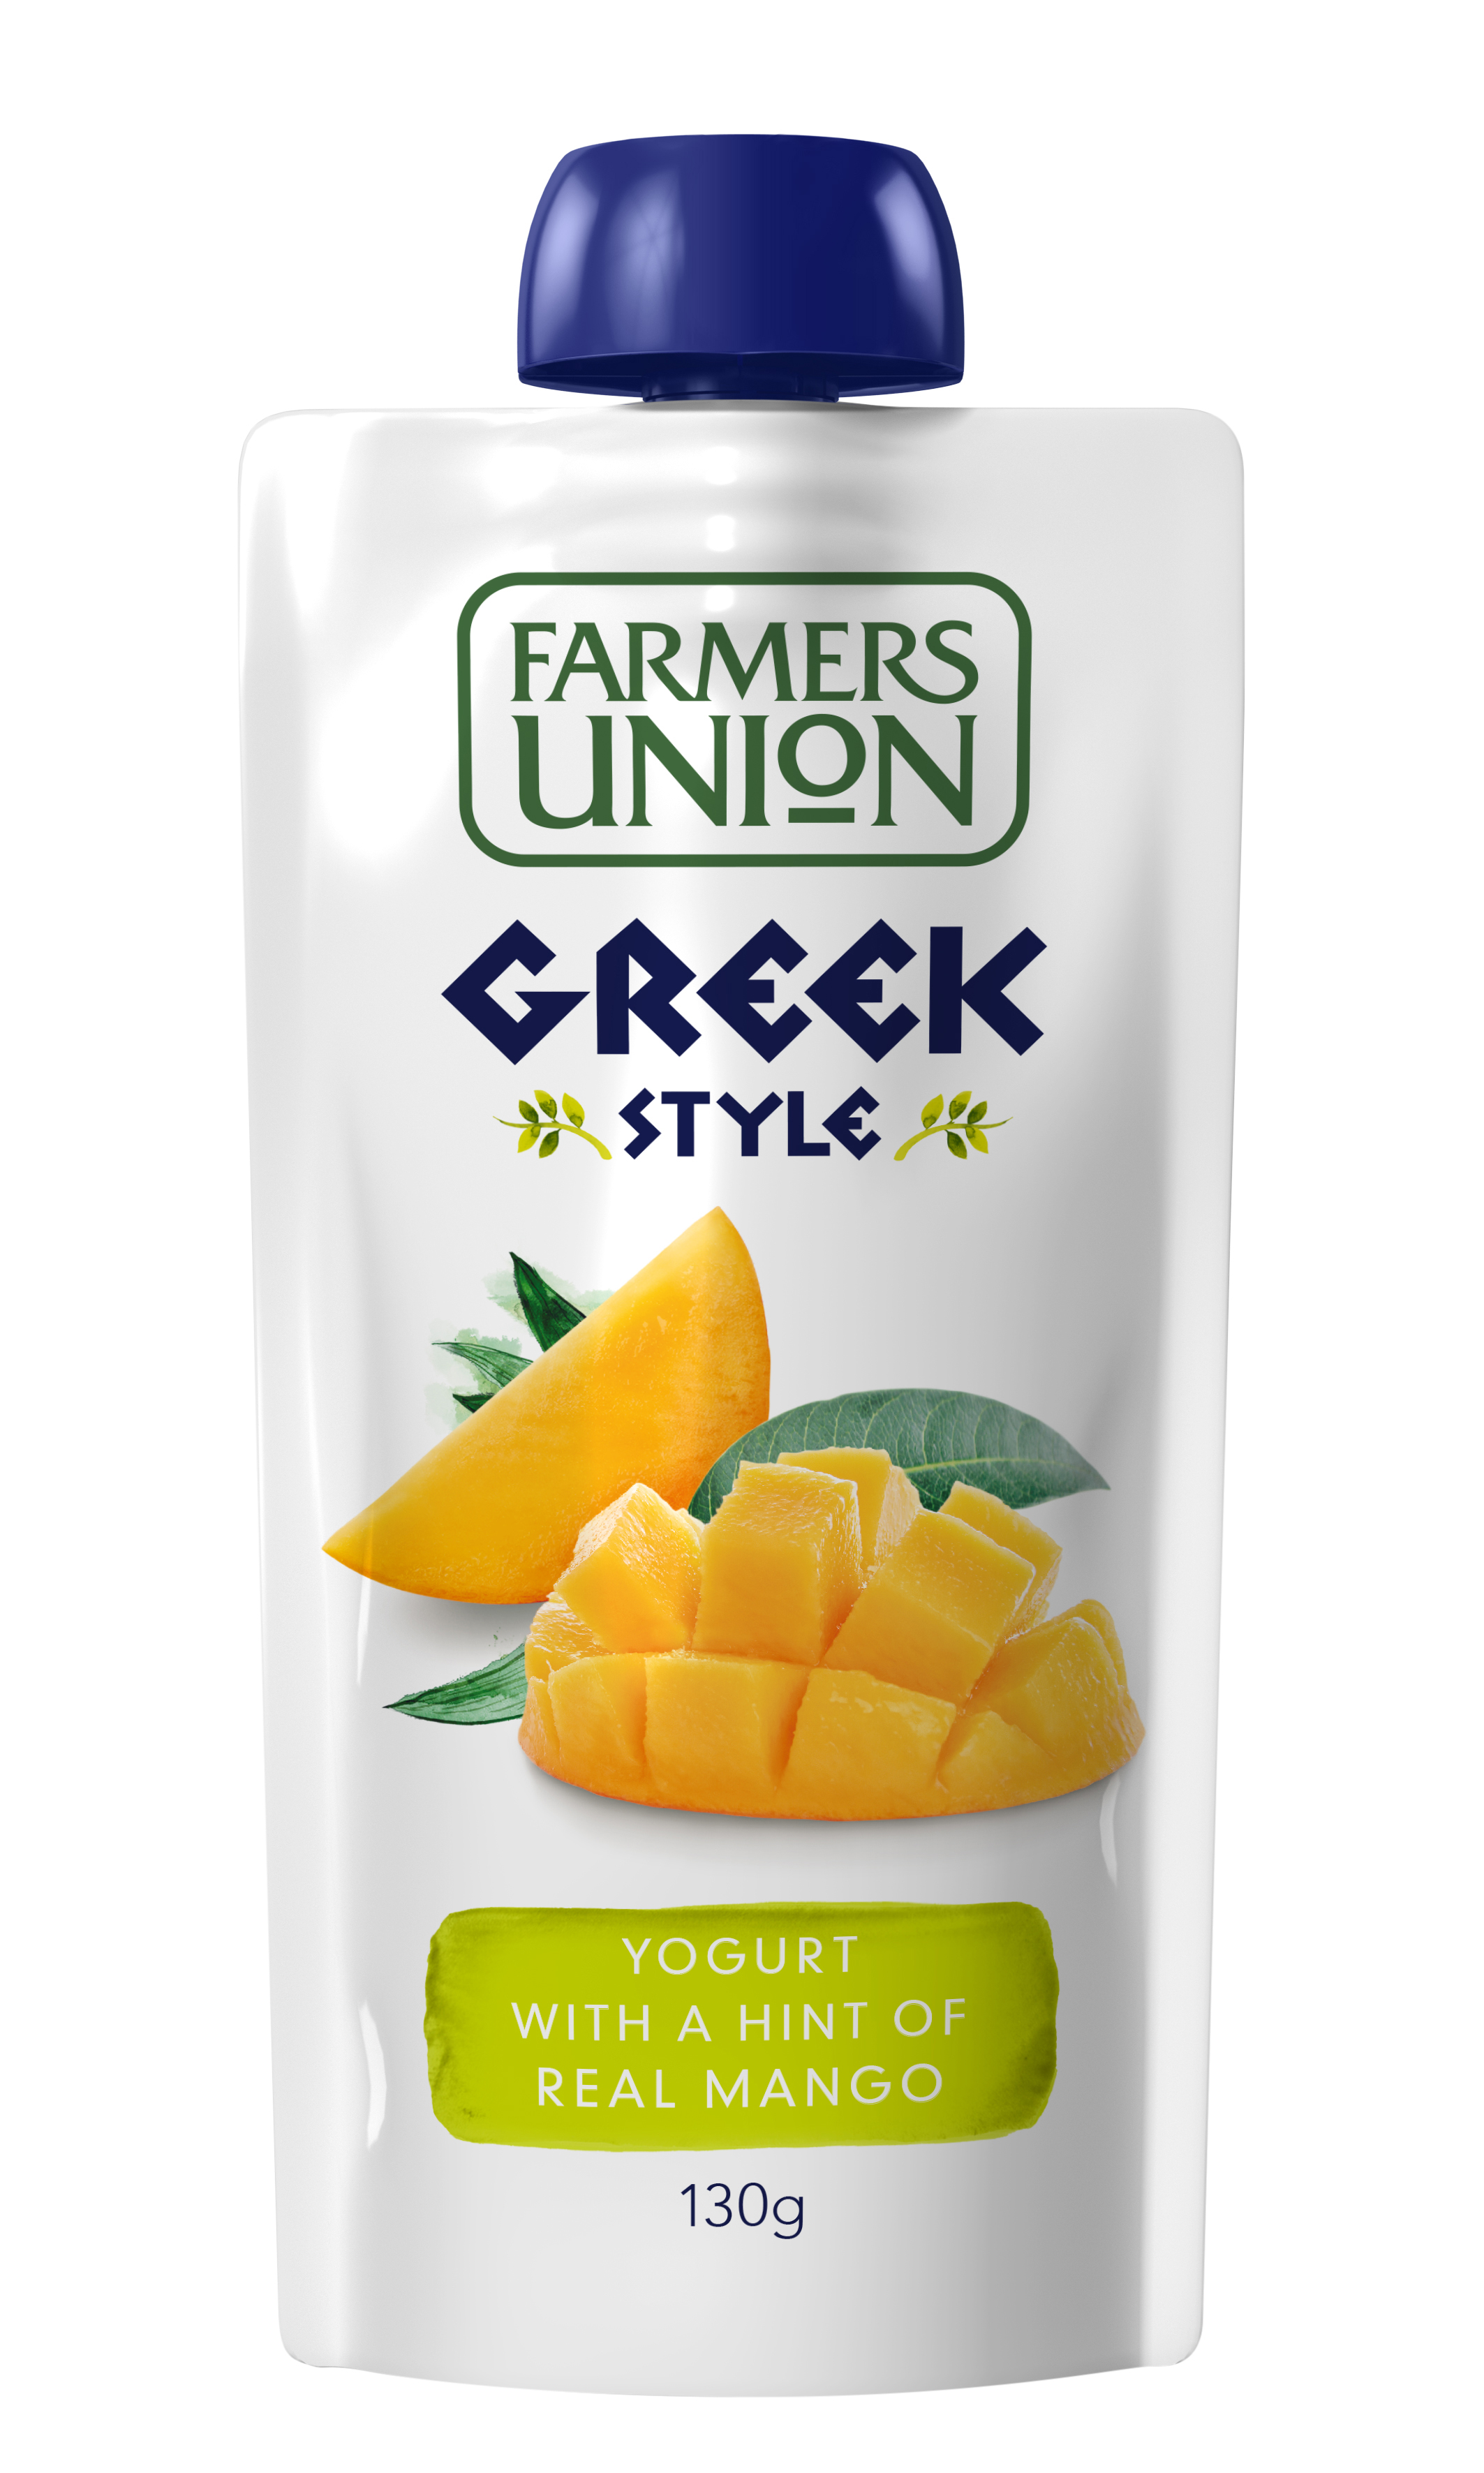 澳洲農協希臘式芒果袋裝乳酪